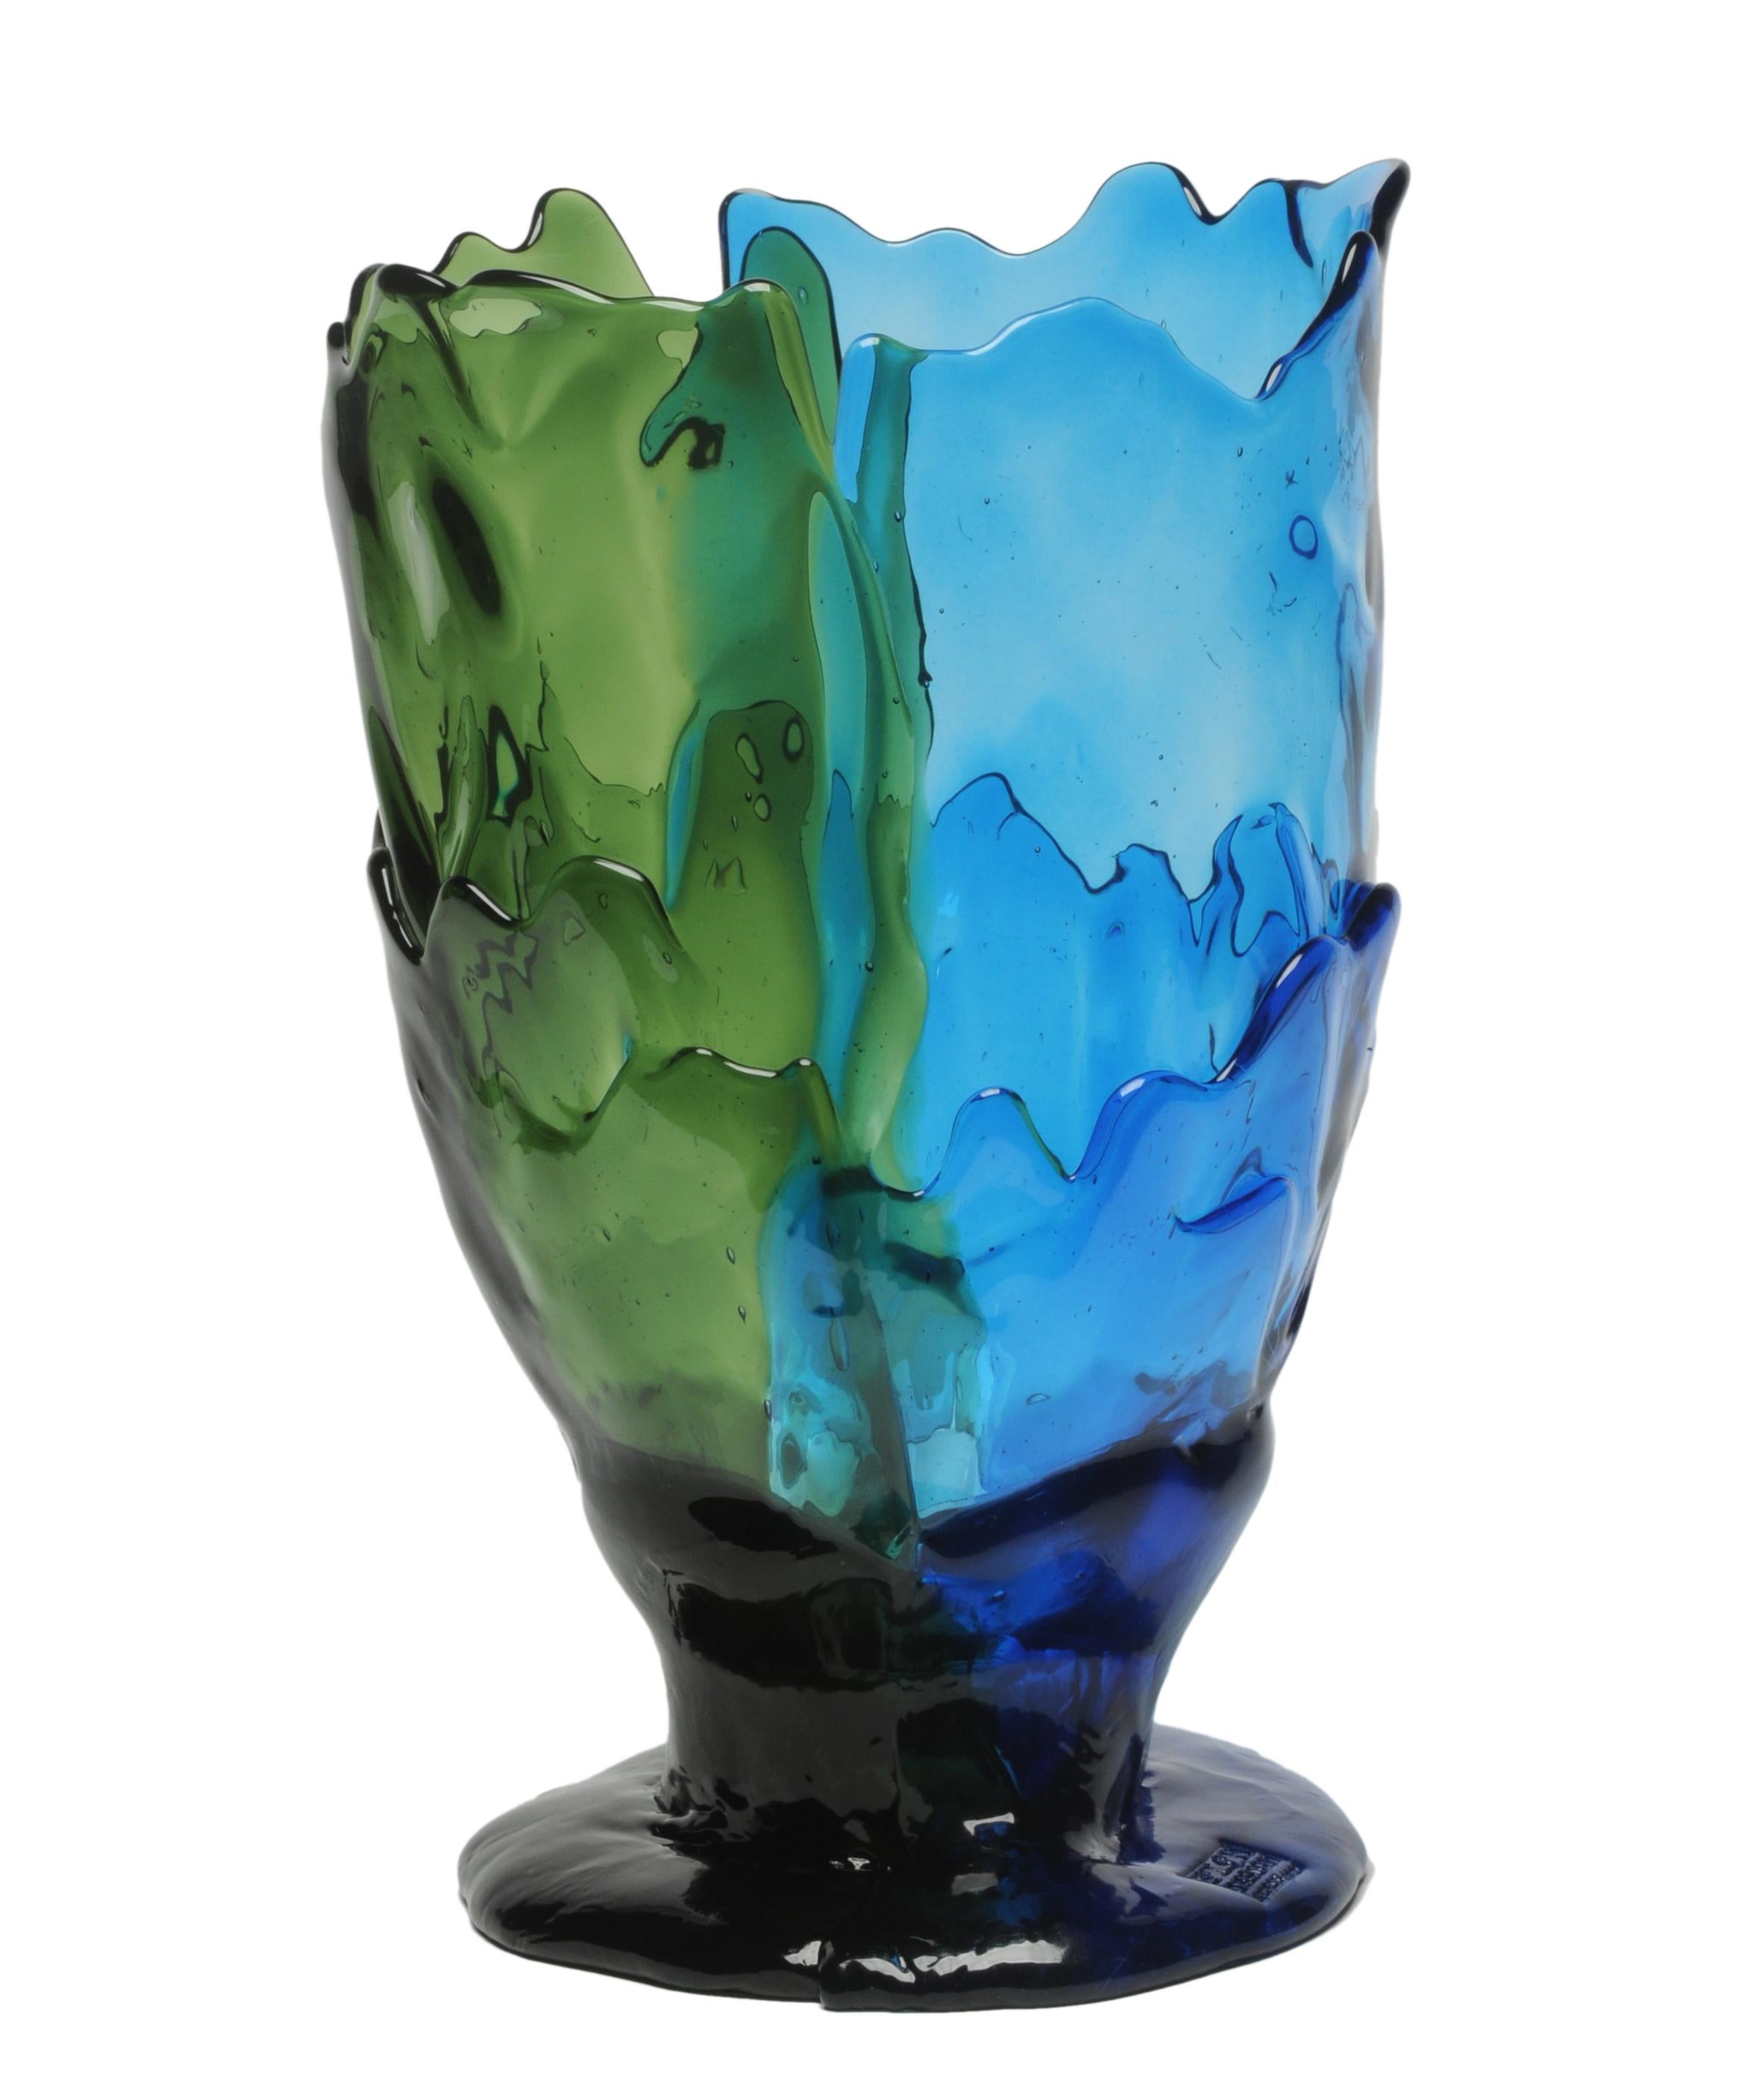 Vase Twin-C, vert clair et bleu.

Vase en résine souple conçu par Gaetano Pesce en 1995 pour la collection Fish Design.

Mesures : L - ø 22cm x H 36cm

Autres tailles disponibles.

Couleurs : vert clair et bleu.

Vase en résine souple conçu par